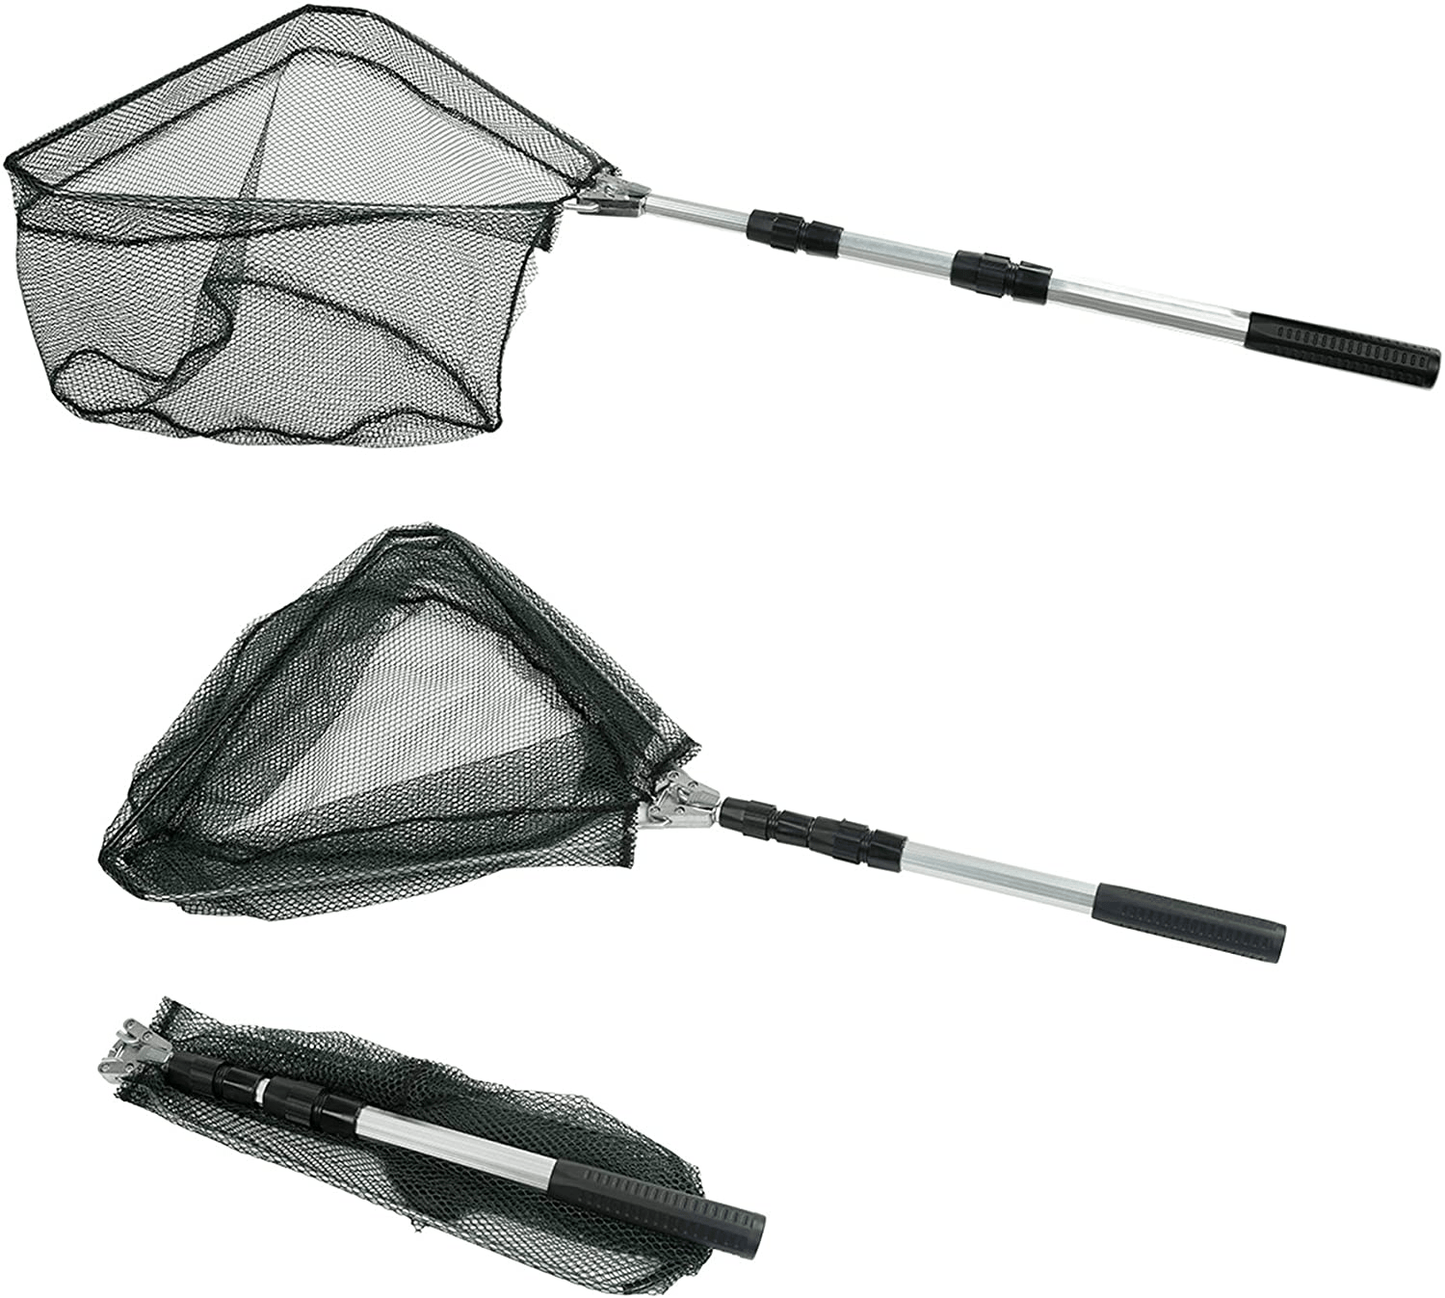 Otterk Telescoping Fishing Landing Net 40-63 Inches